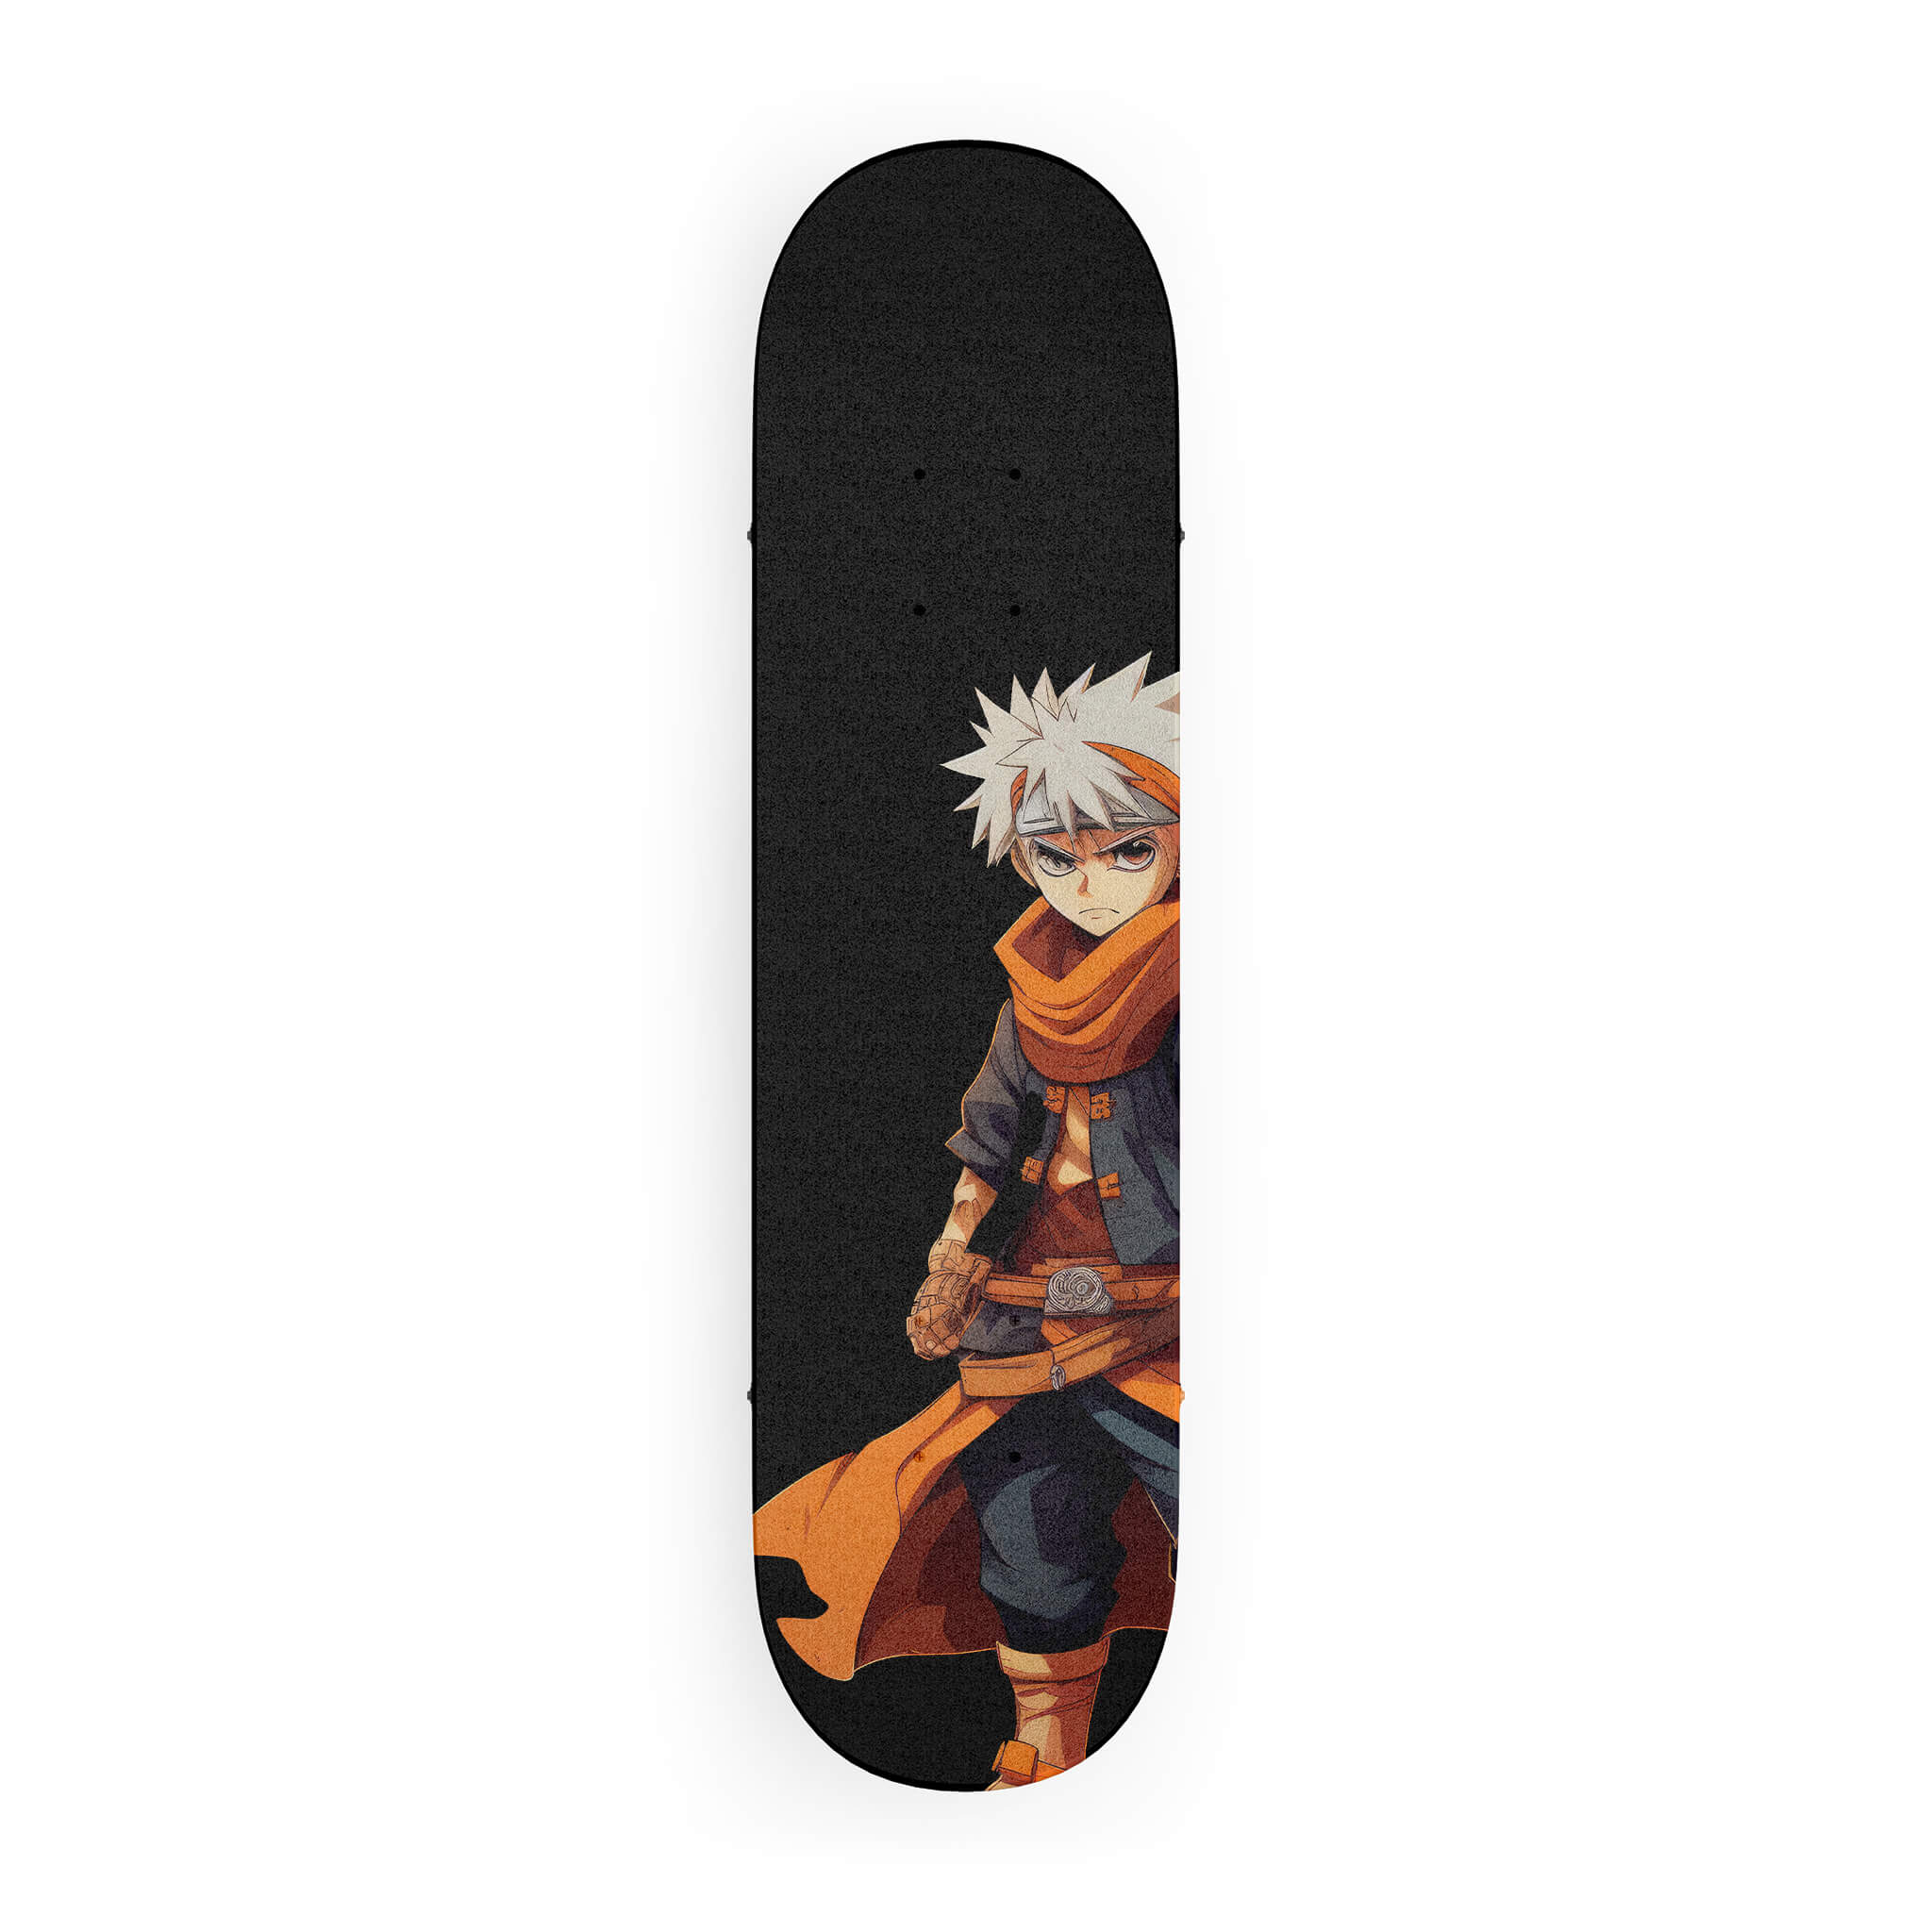 Anime | Skateboard Deck | eBay